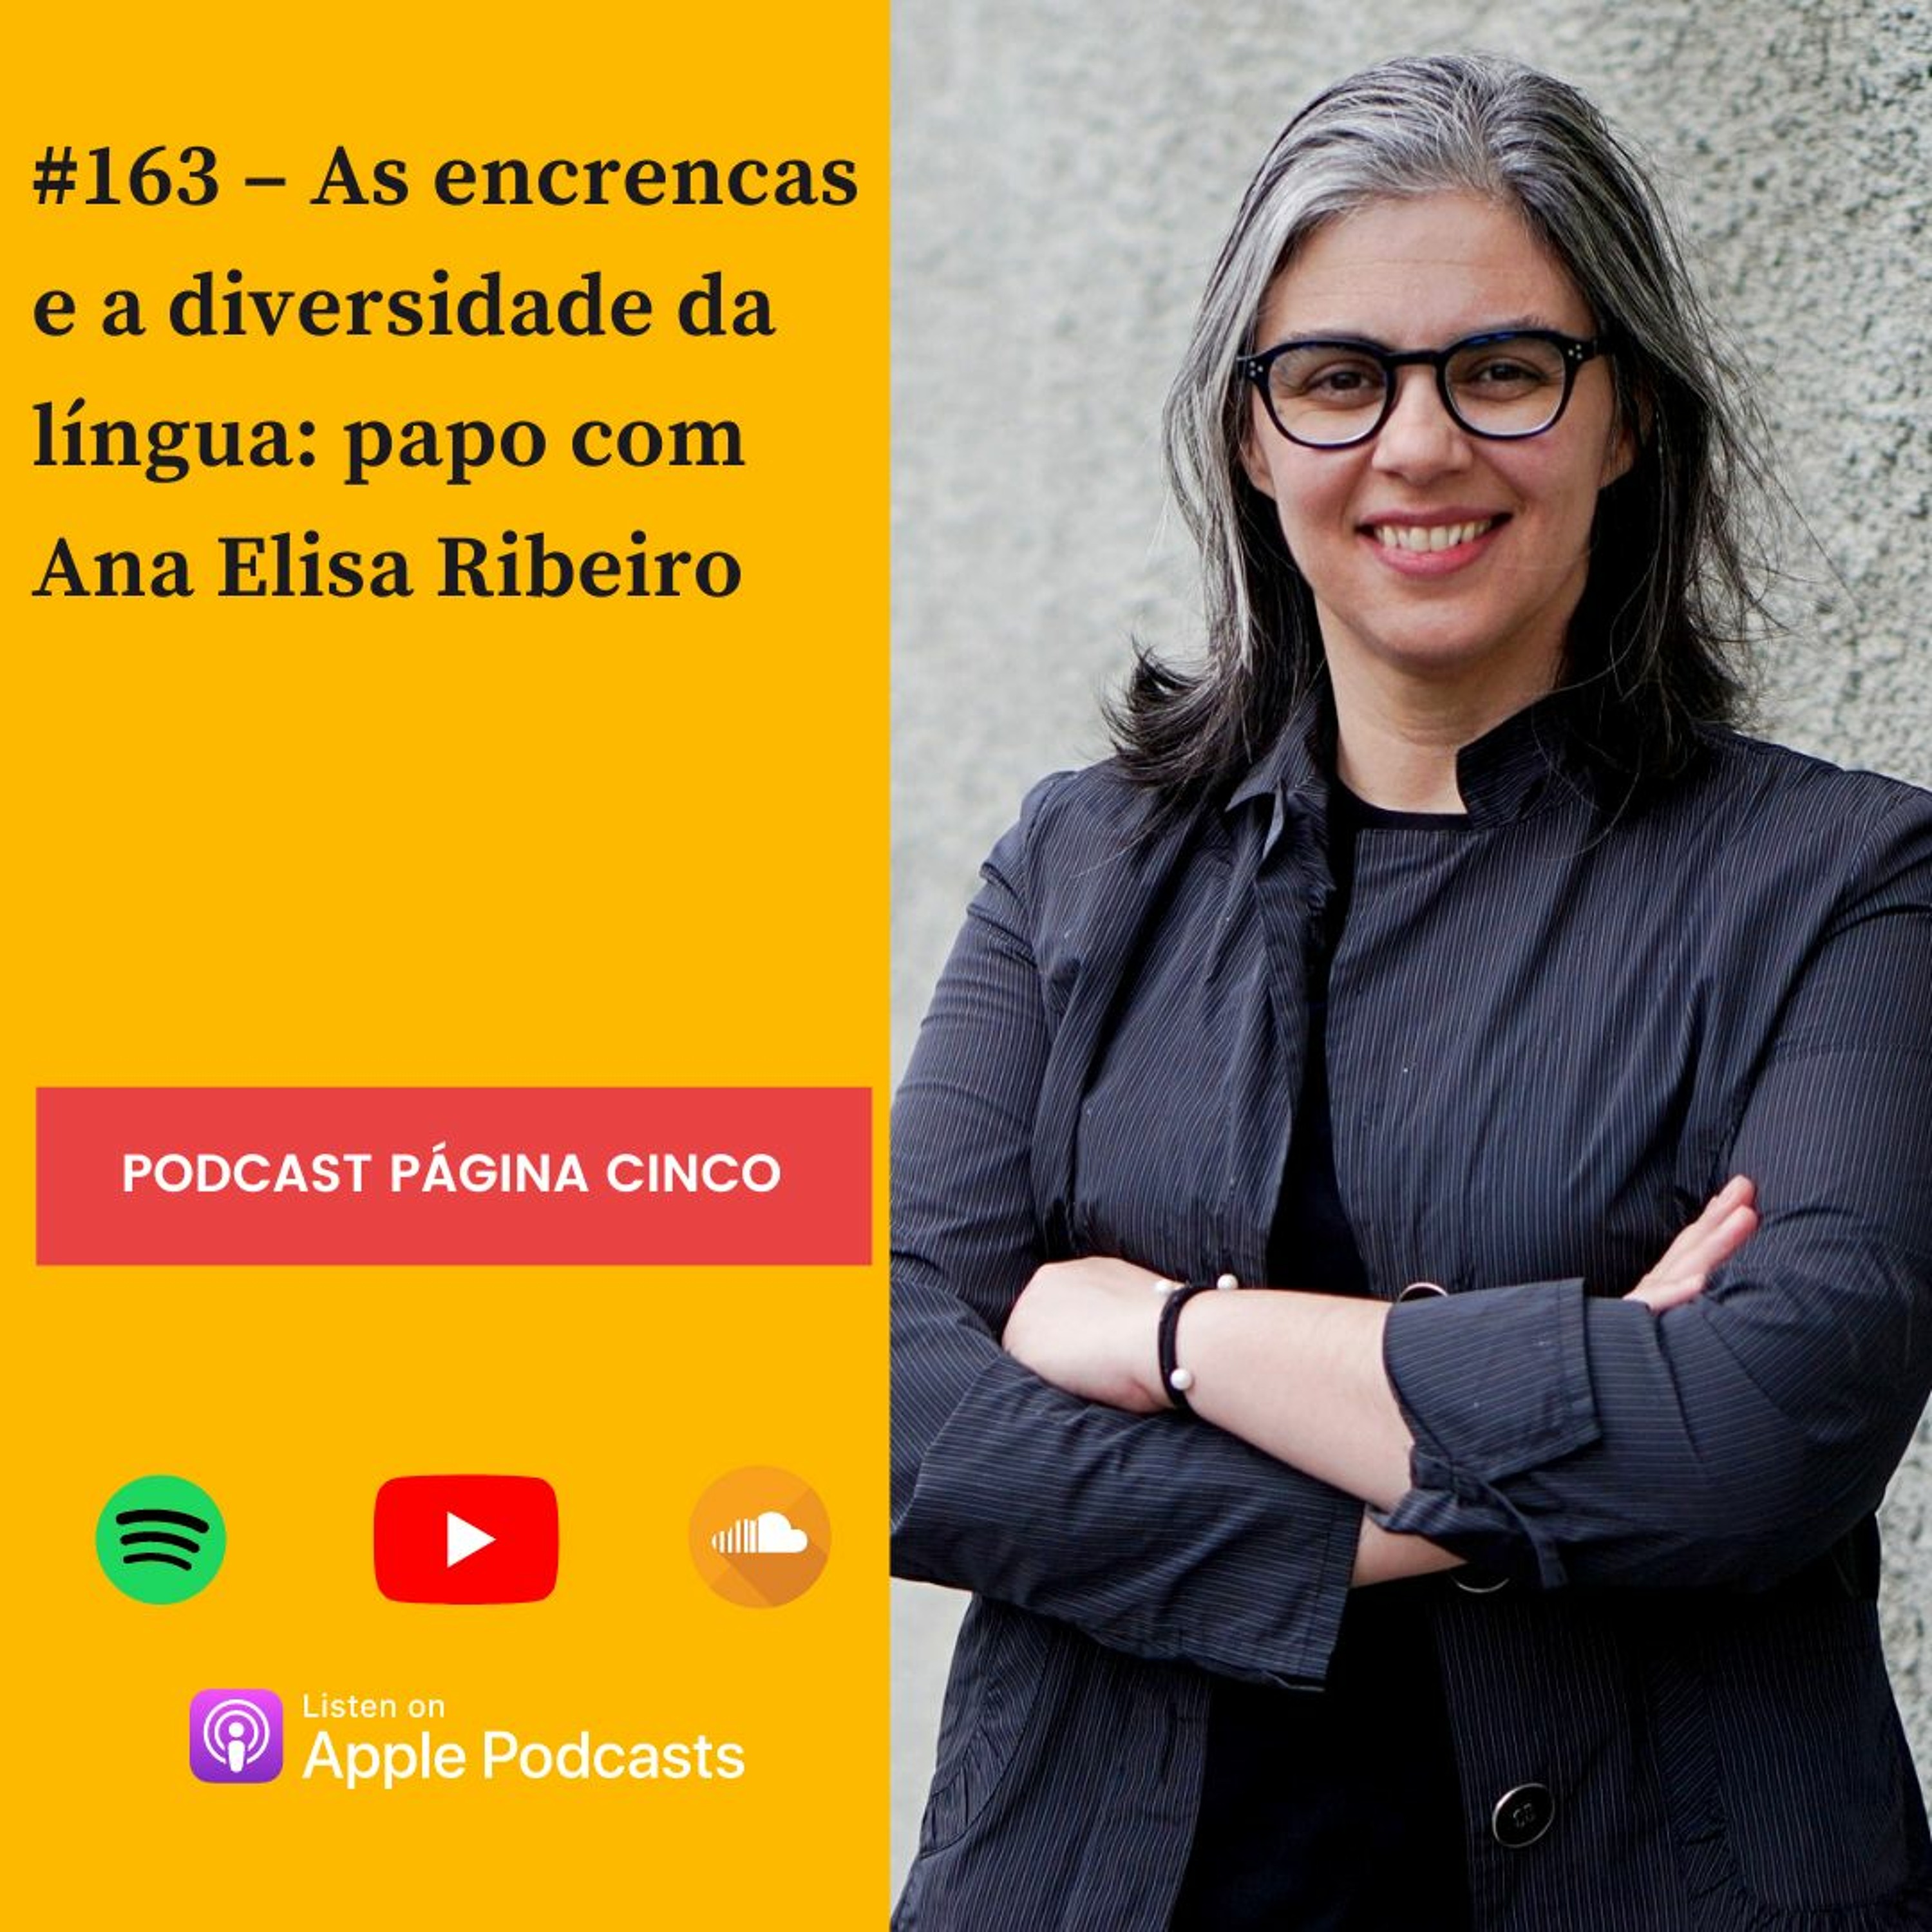 #163 – As encrencas e a diversidade da língua: papo com Ana Elisa Ribeiro